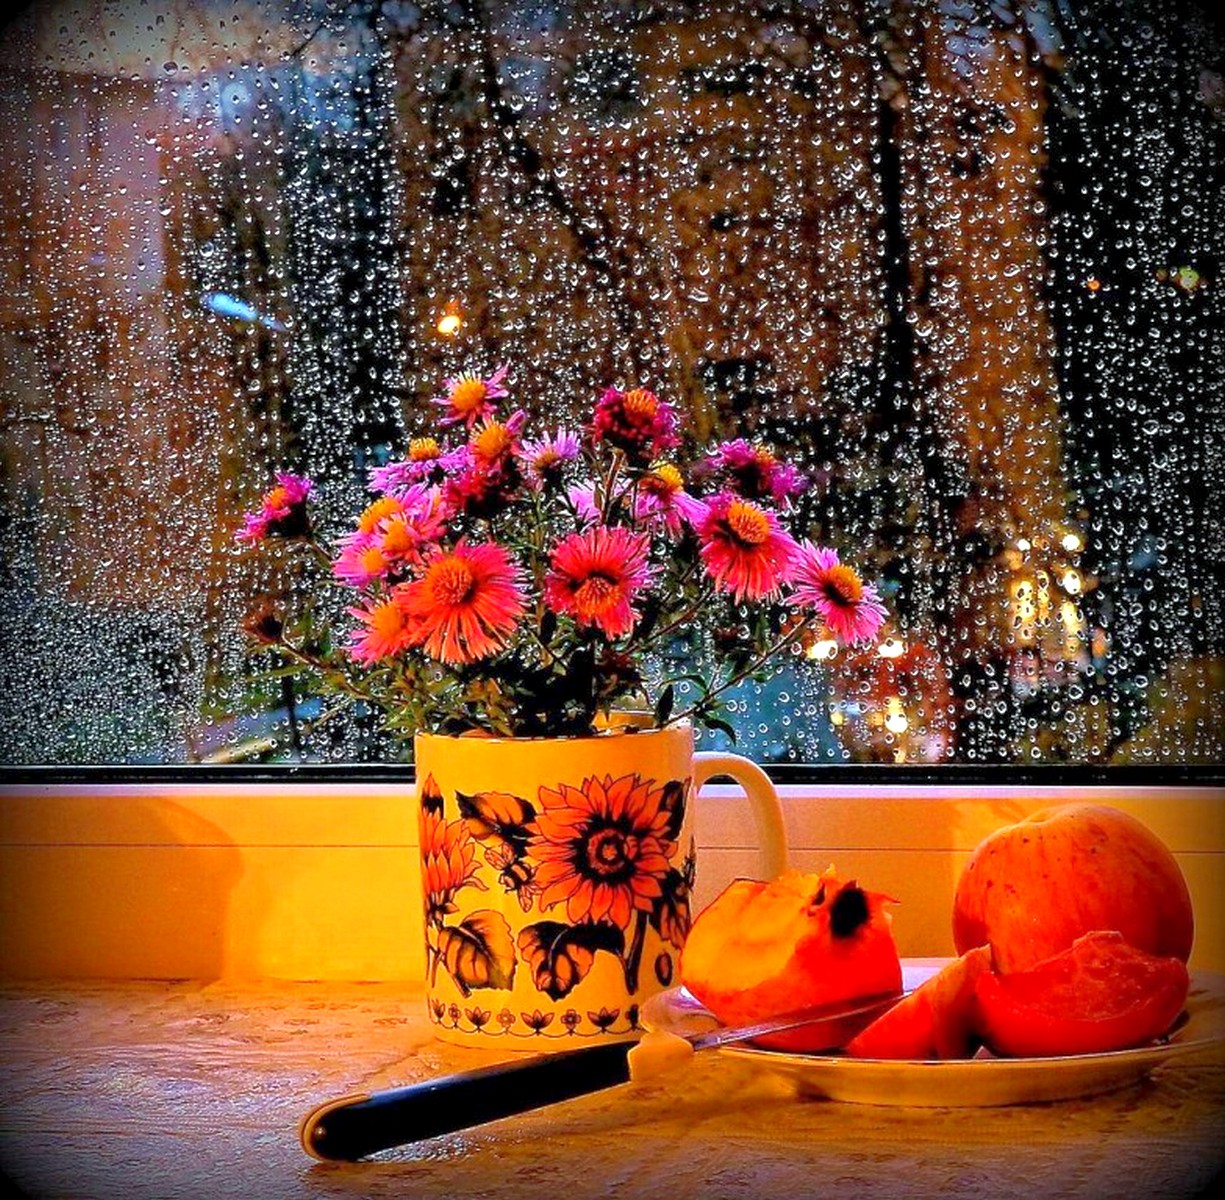 осень дождь картинки красивые доброе утро